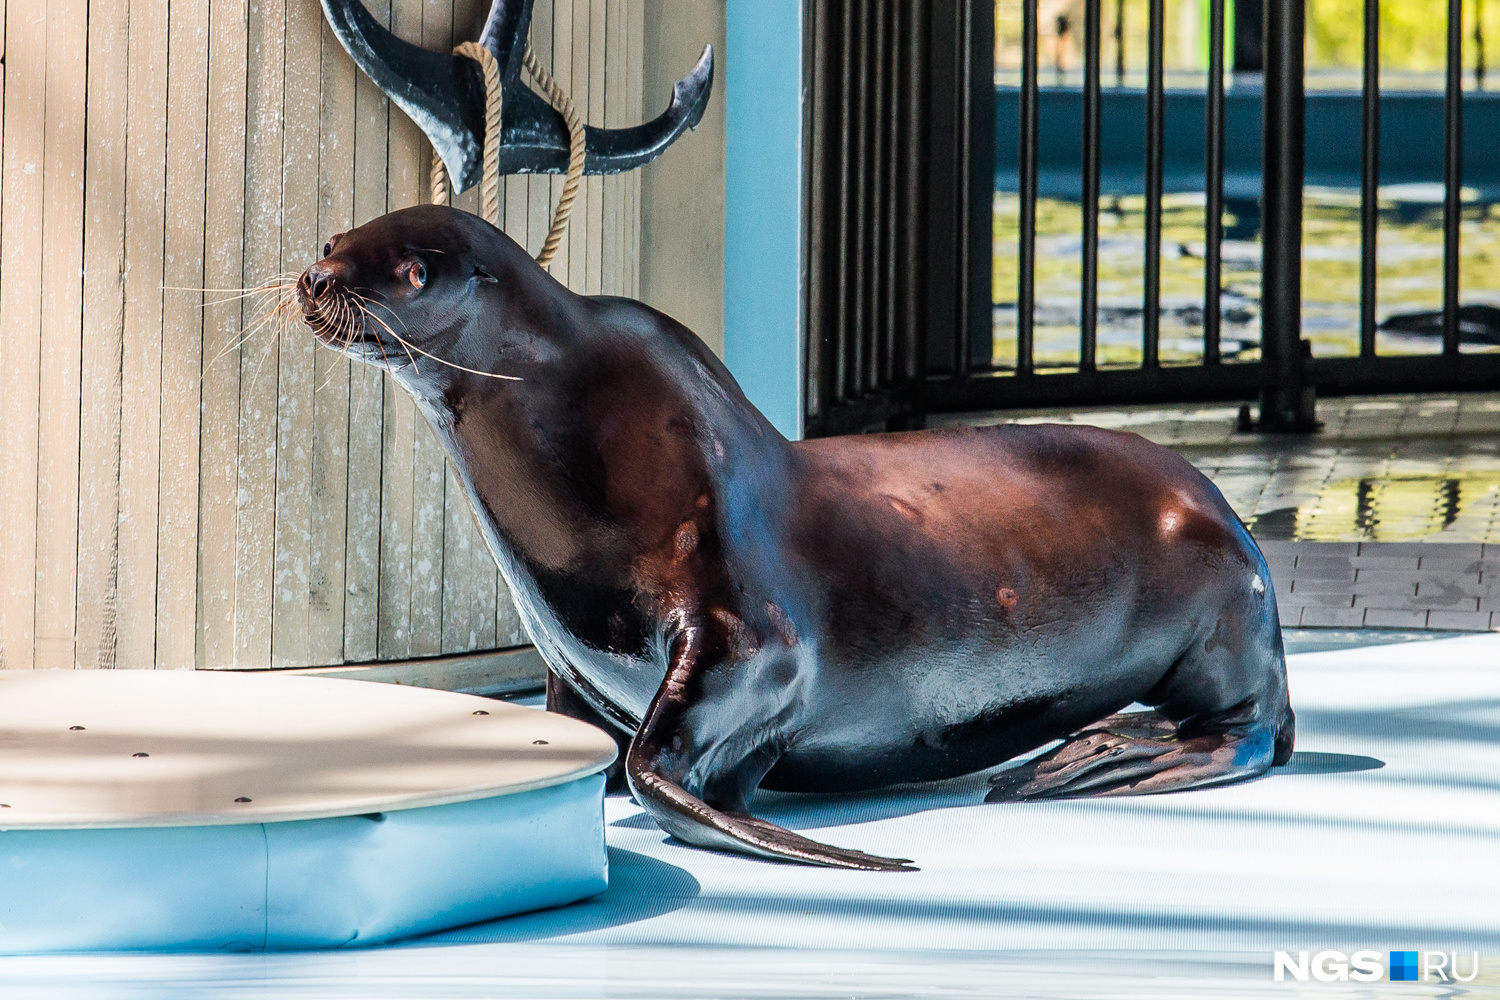 Сивуч — краснокнижное животное, которое теперь выступает в Центре океанографии